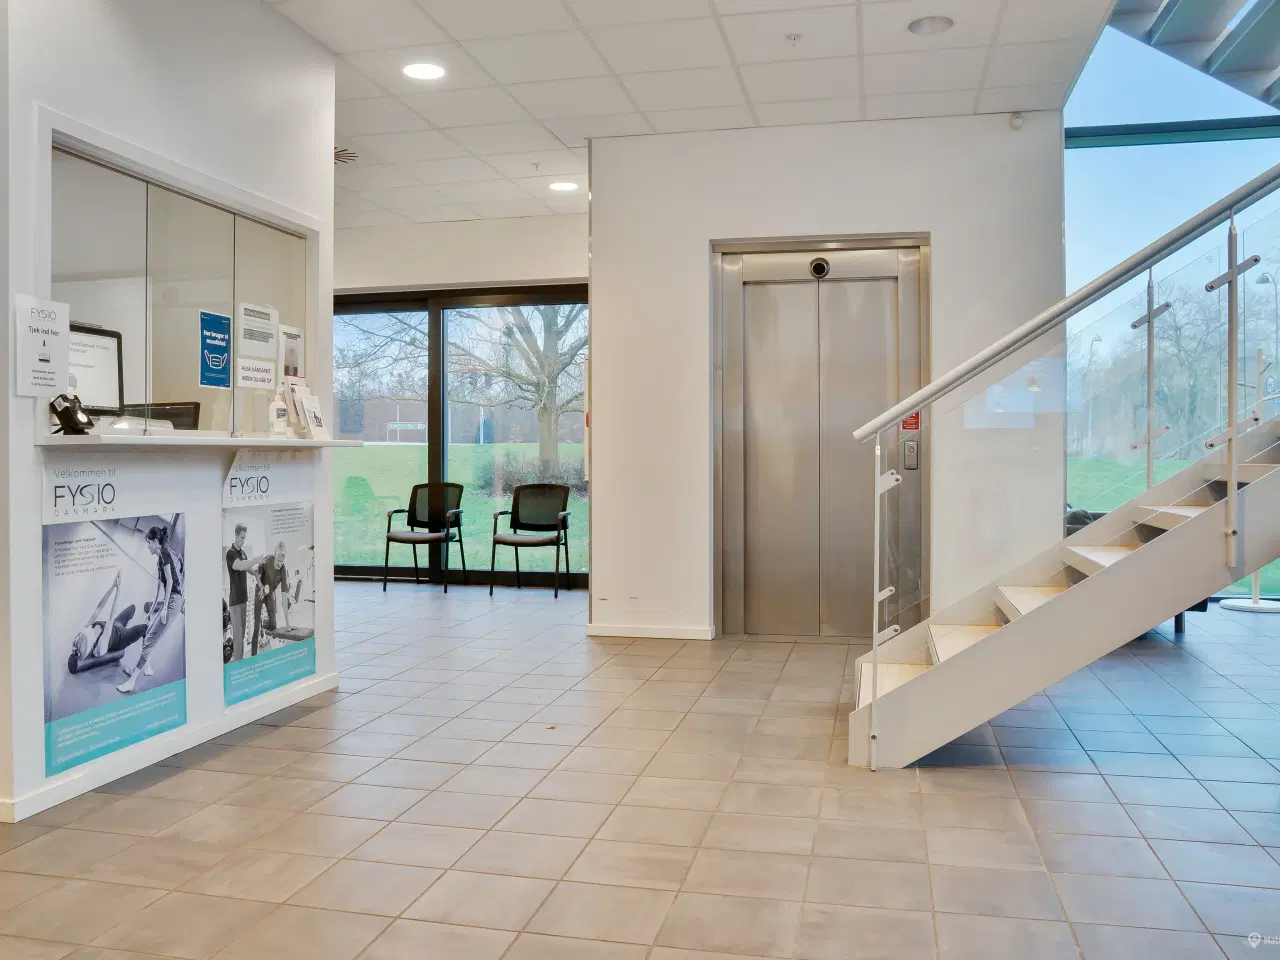 Billede 4 - Kliniklokaler/behandlerrum i moderne Sundhedshus Brøndby